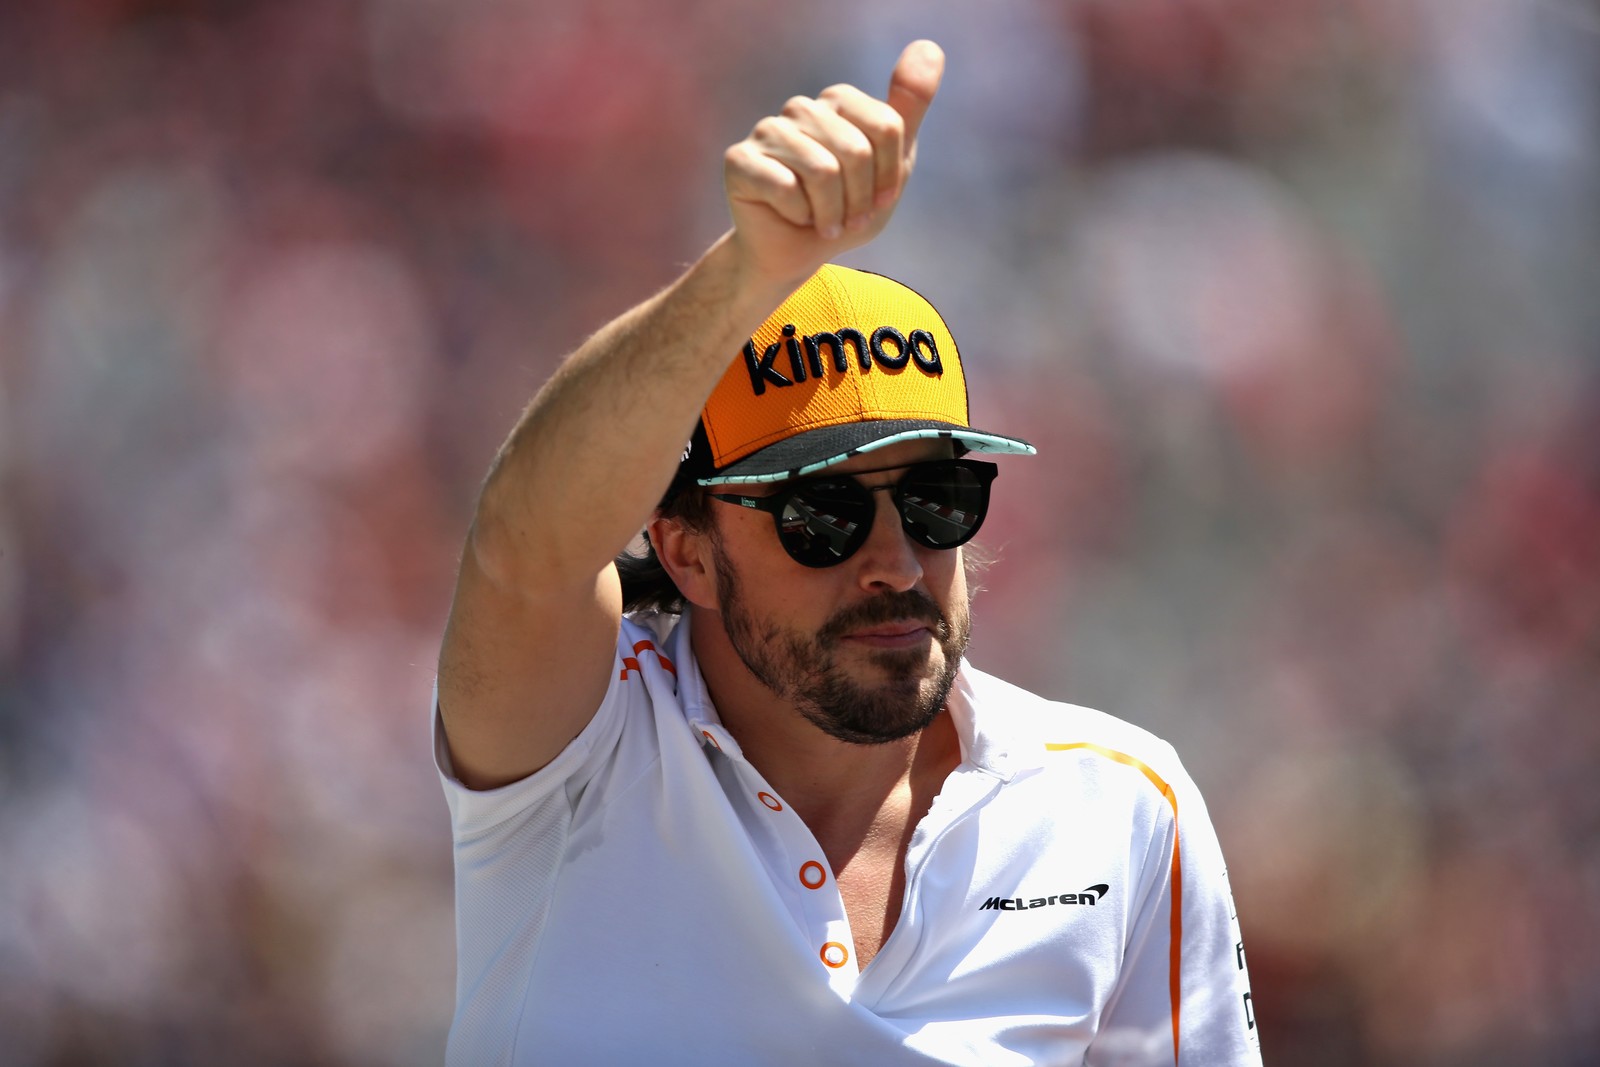 Bicampeão mundial anuncia que deixará a Fórmula 1 no fim da temporada de 2018